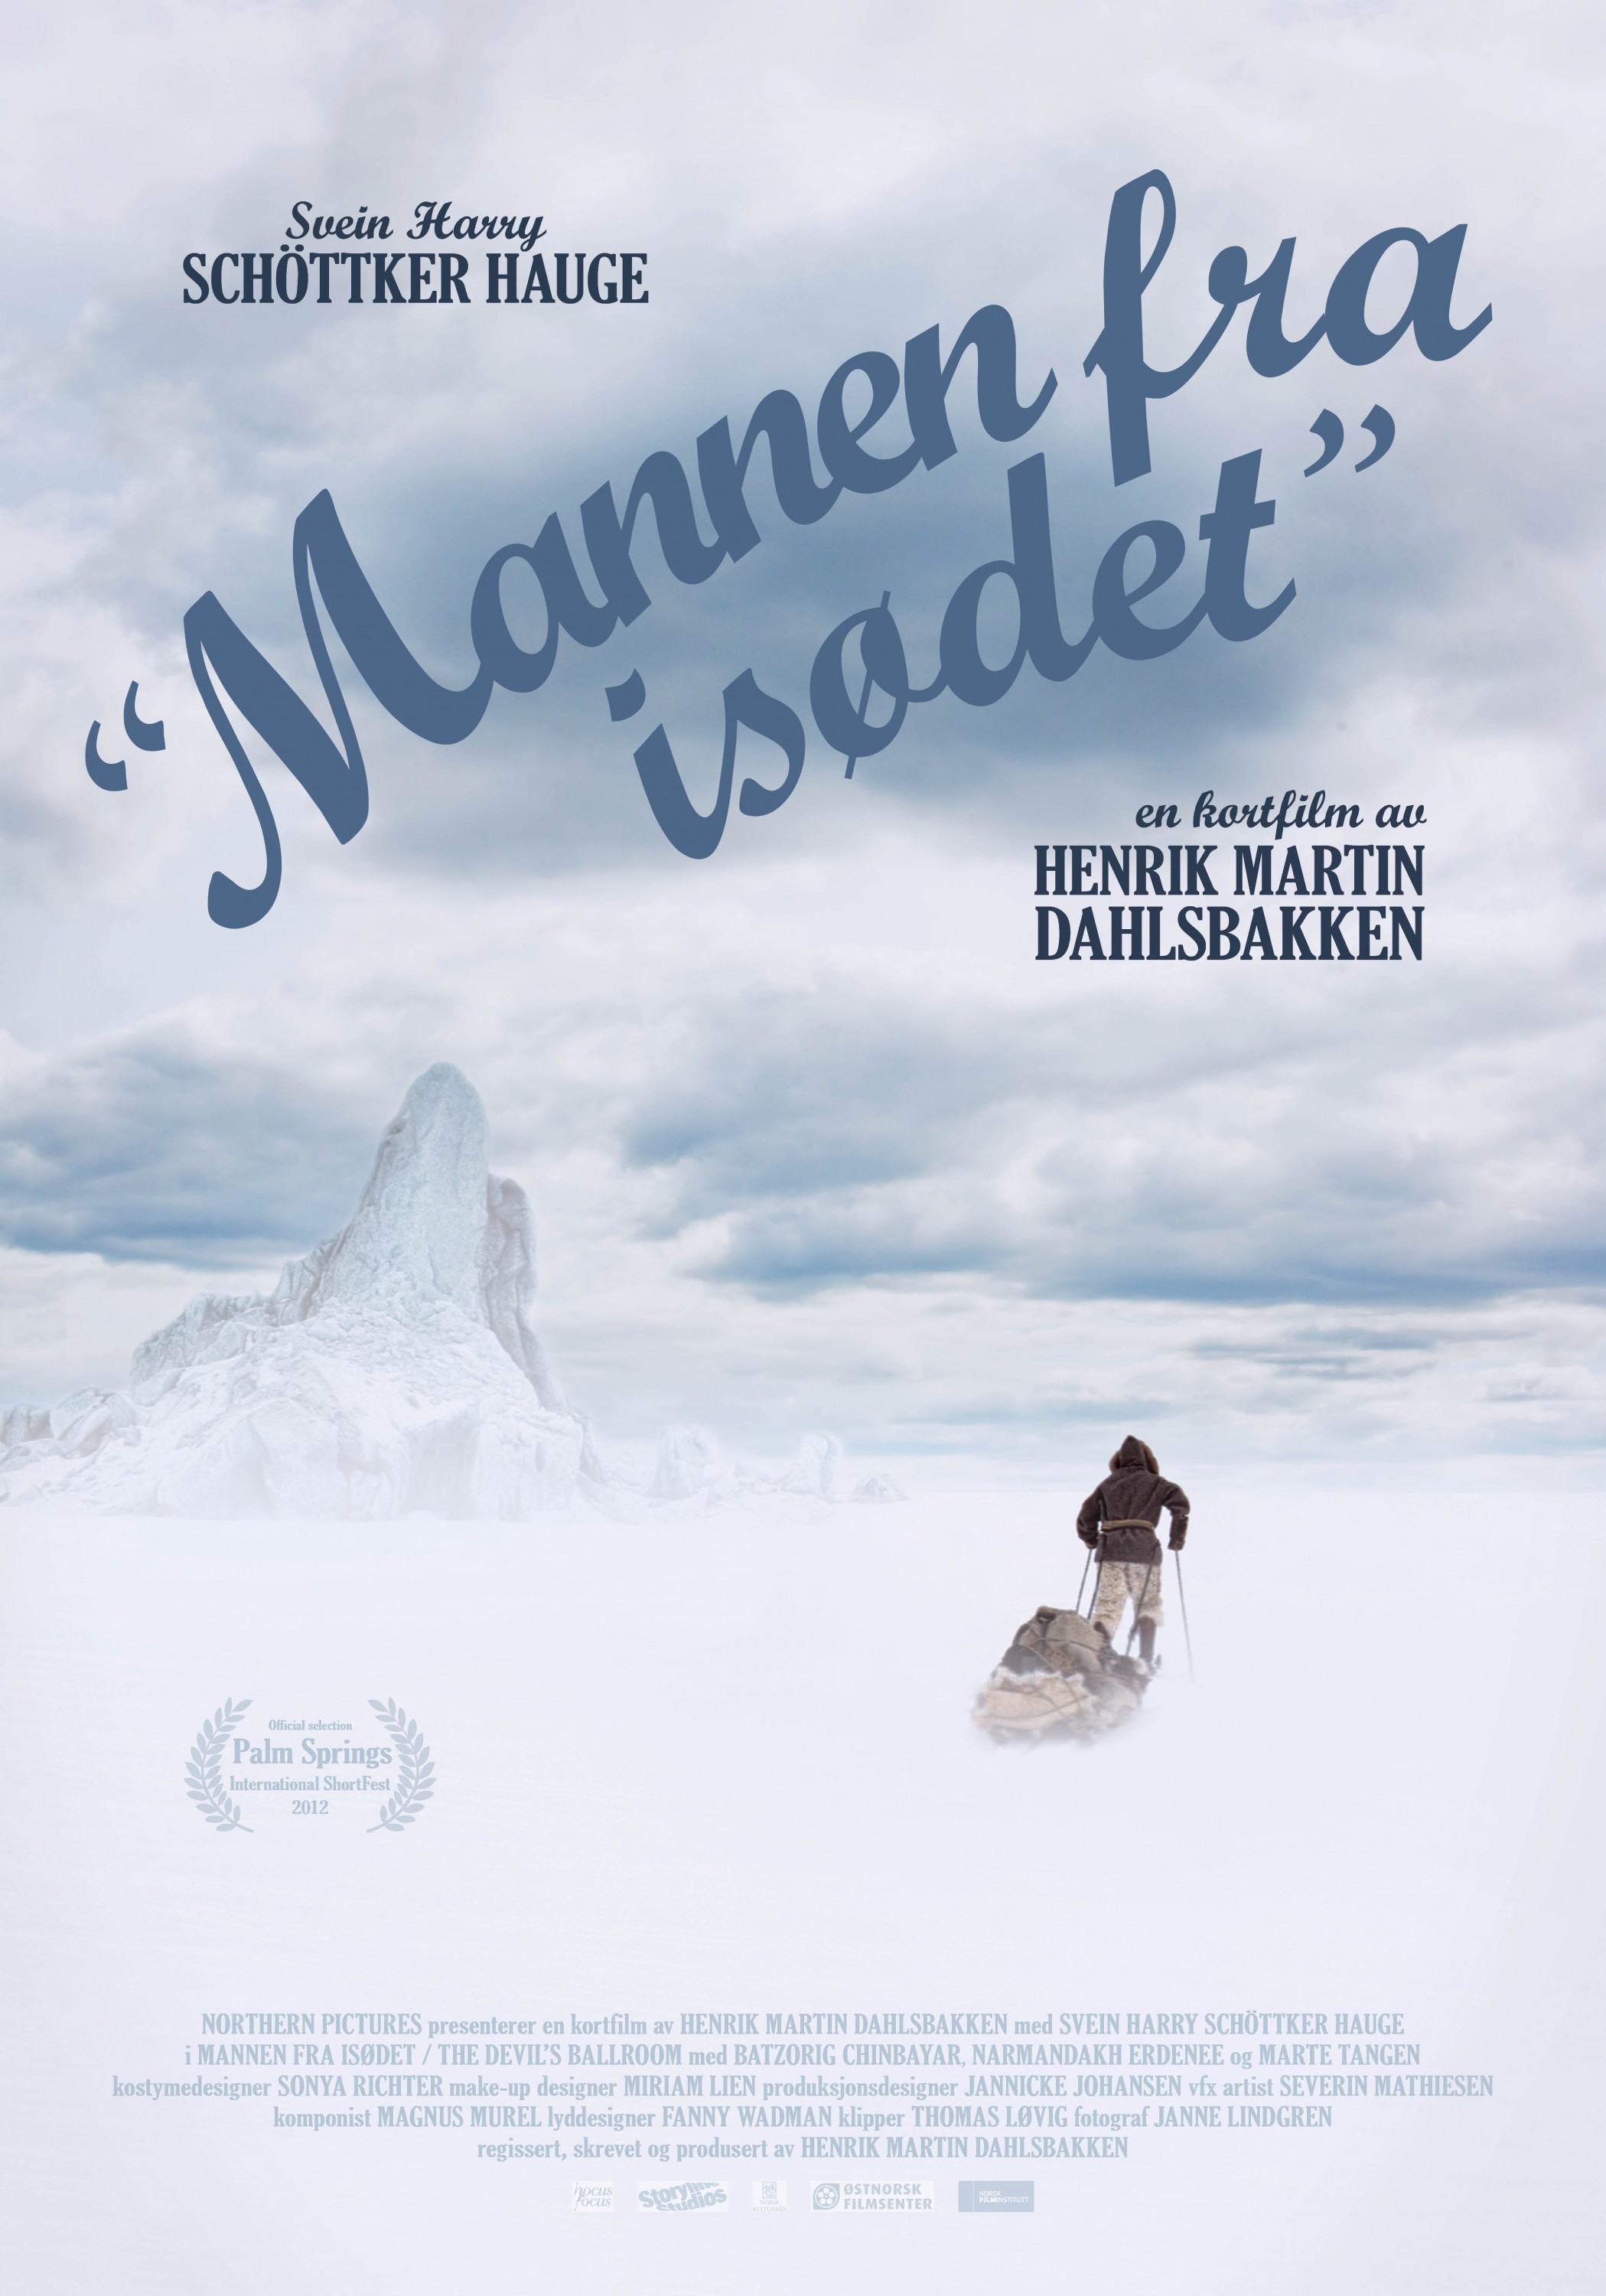 Mega Sized Movie Poster Image for Mannen fra isdet